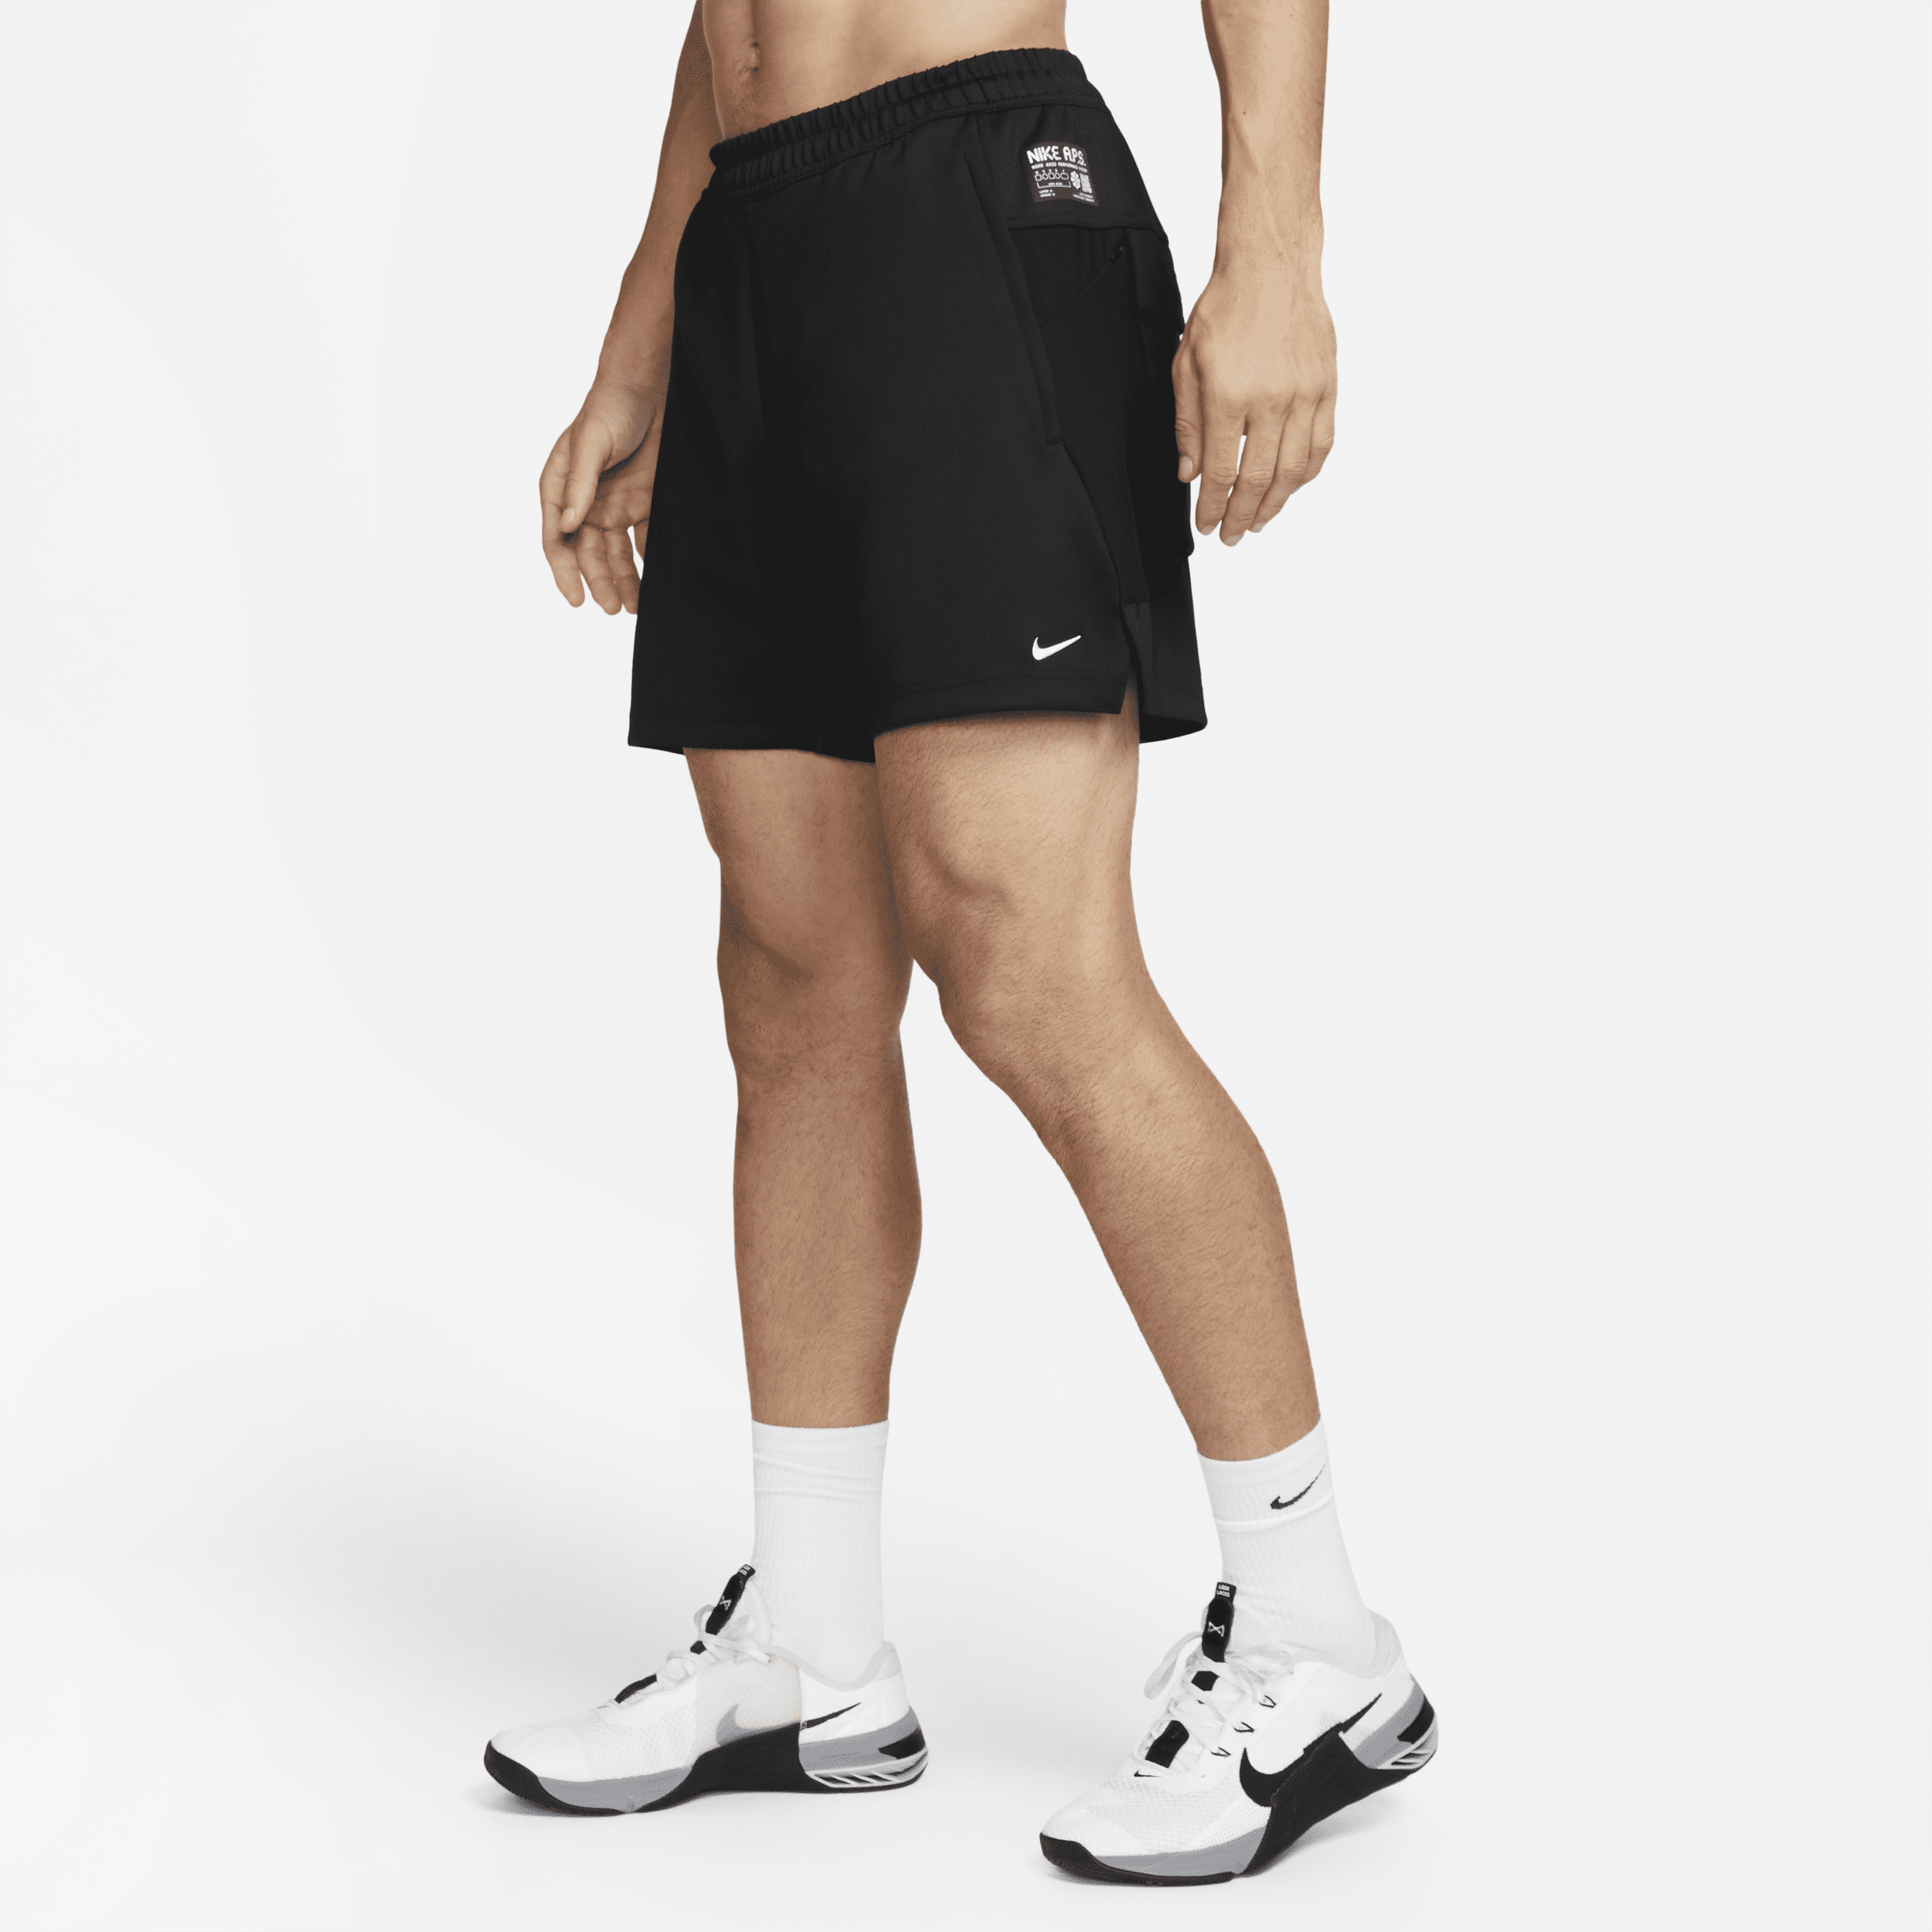 Nike Dri-FIT ADV A.P.S. Shorts versatili non foderati 15 cm – Uomo - Nero